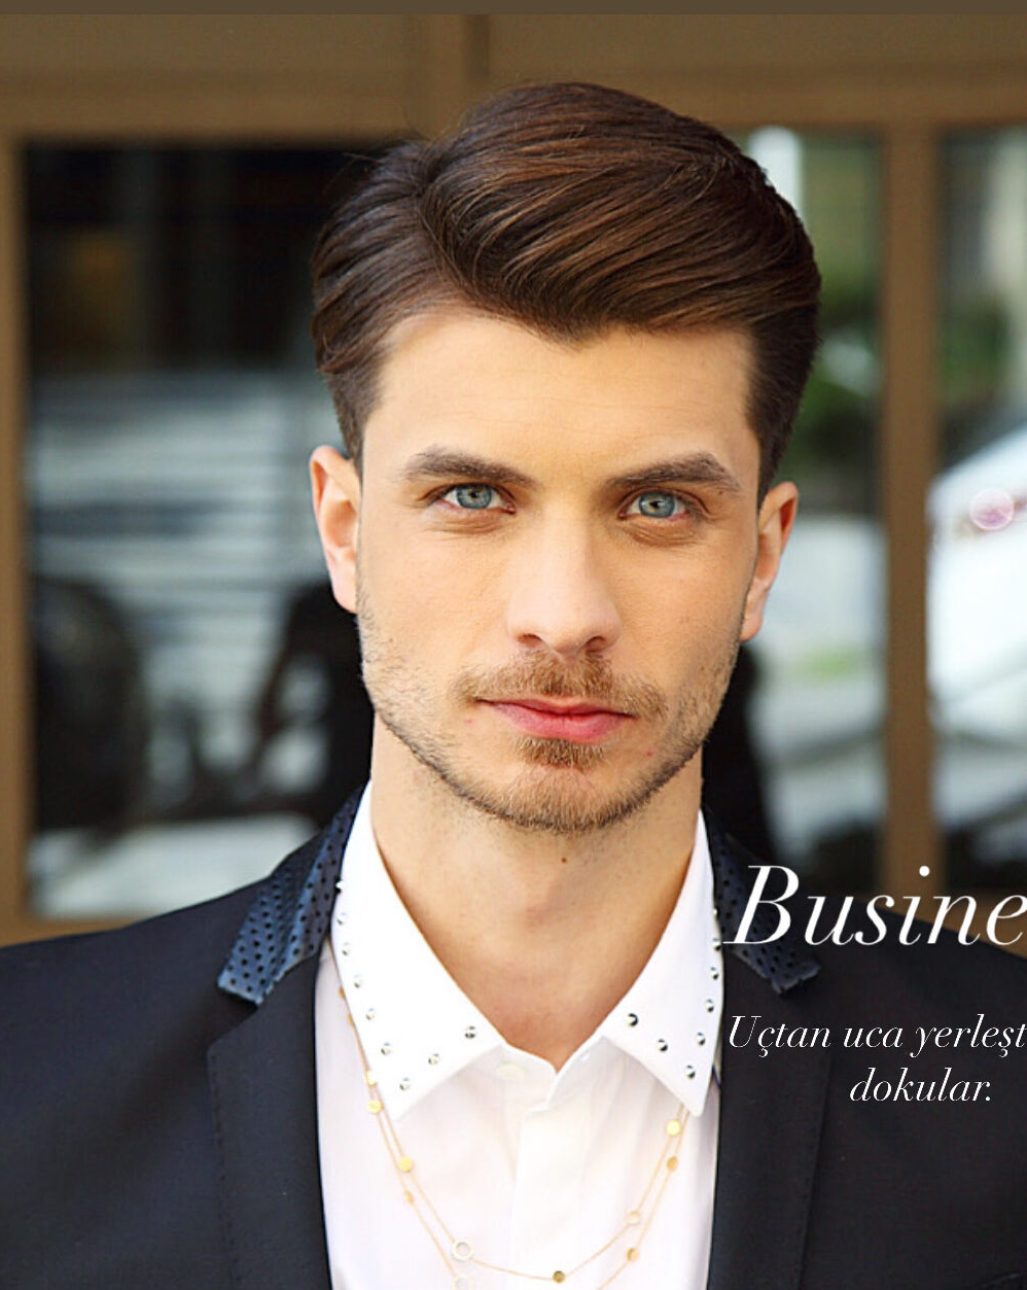 By Metin Aksoy - Business Saç Modeli